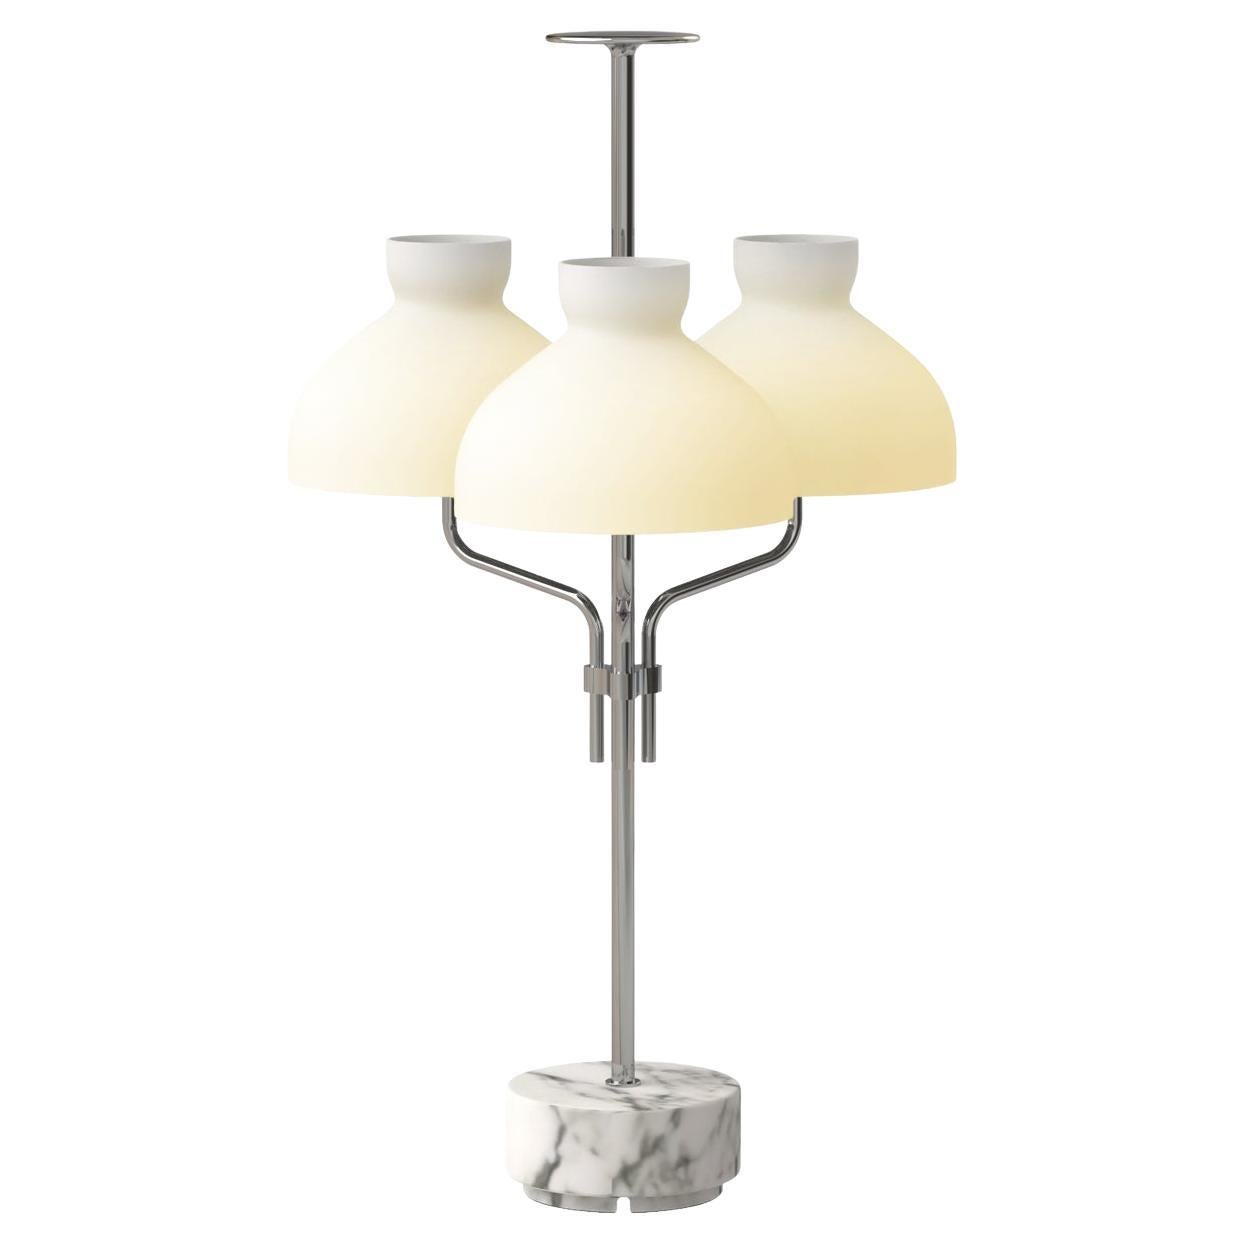 Ignazio Gardella 'Arenzano Tre Fiamme' Table Lamp in White Marble and Chrome For Sale